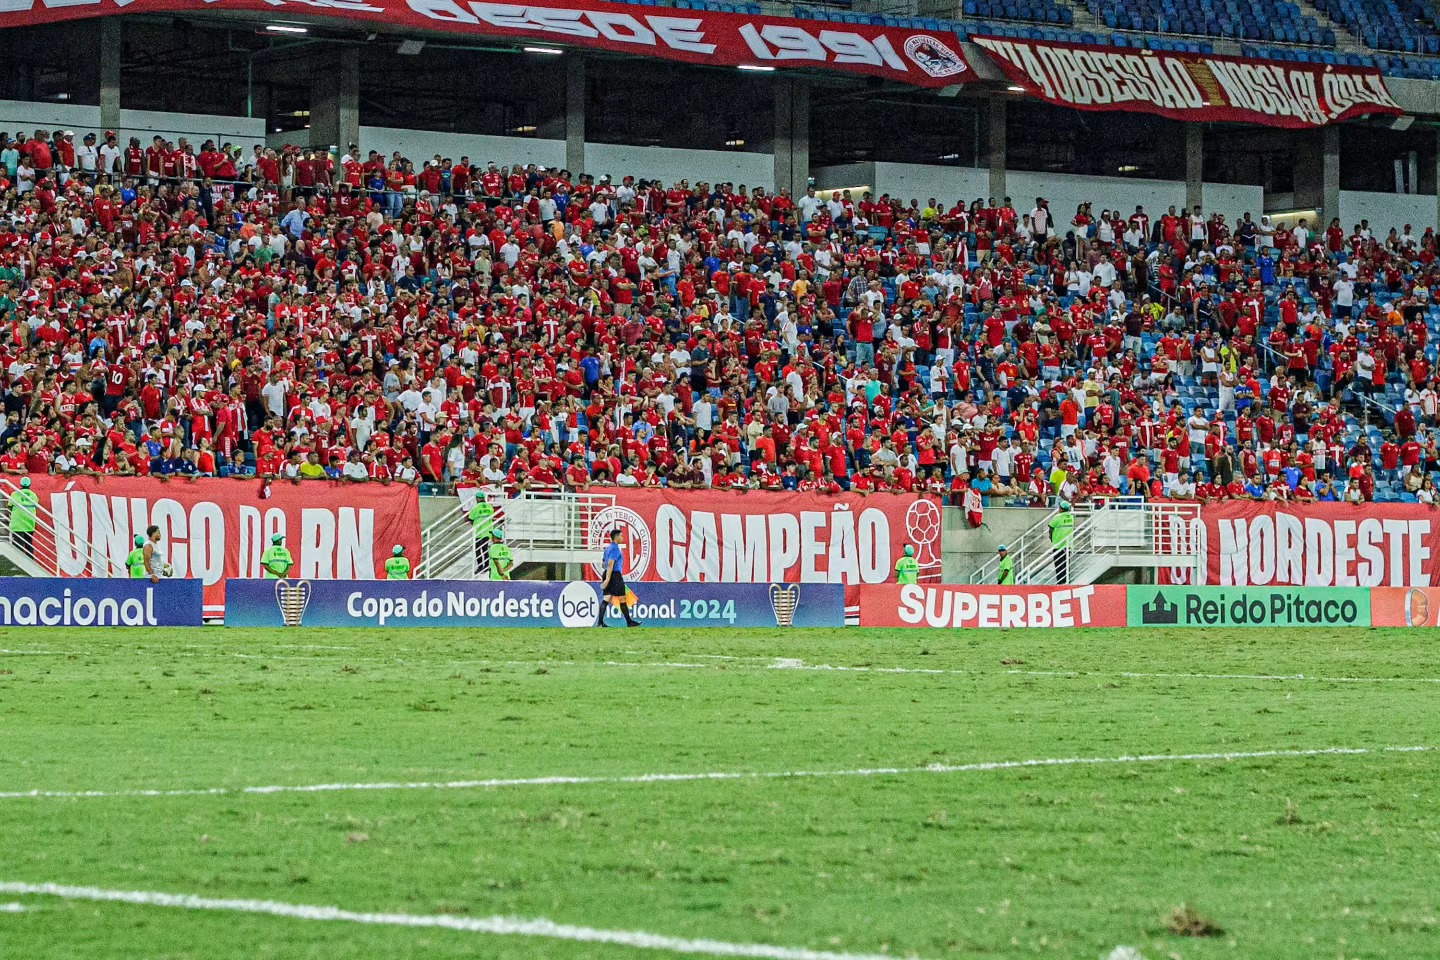 América-RN define preços dos ingressos para jogo contra o Corinthians